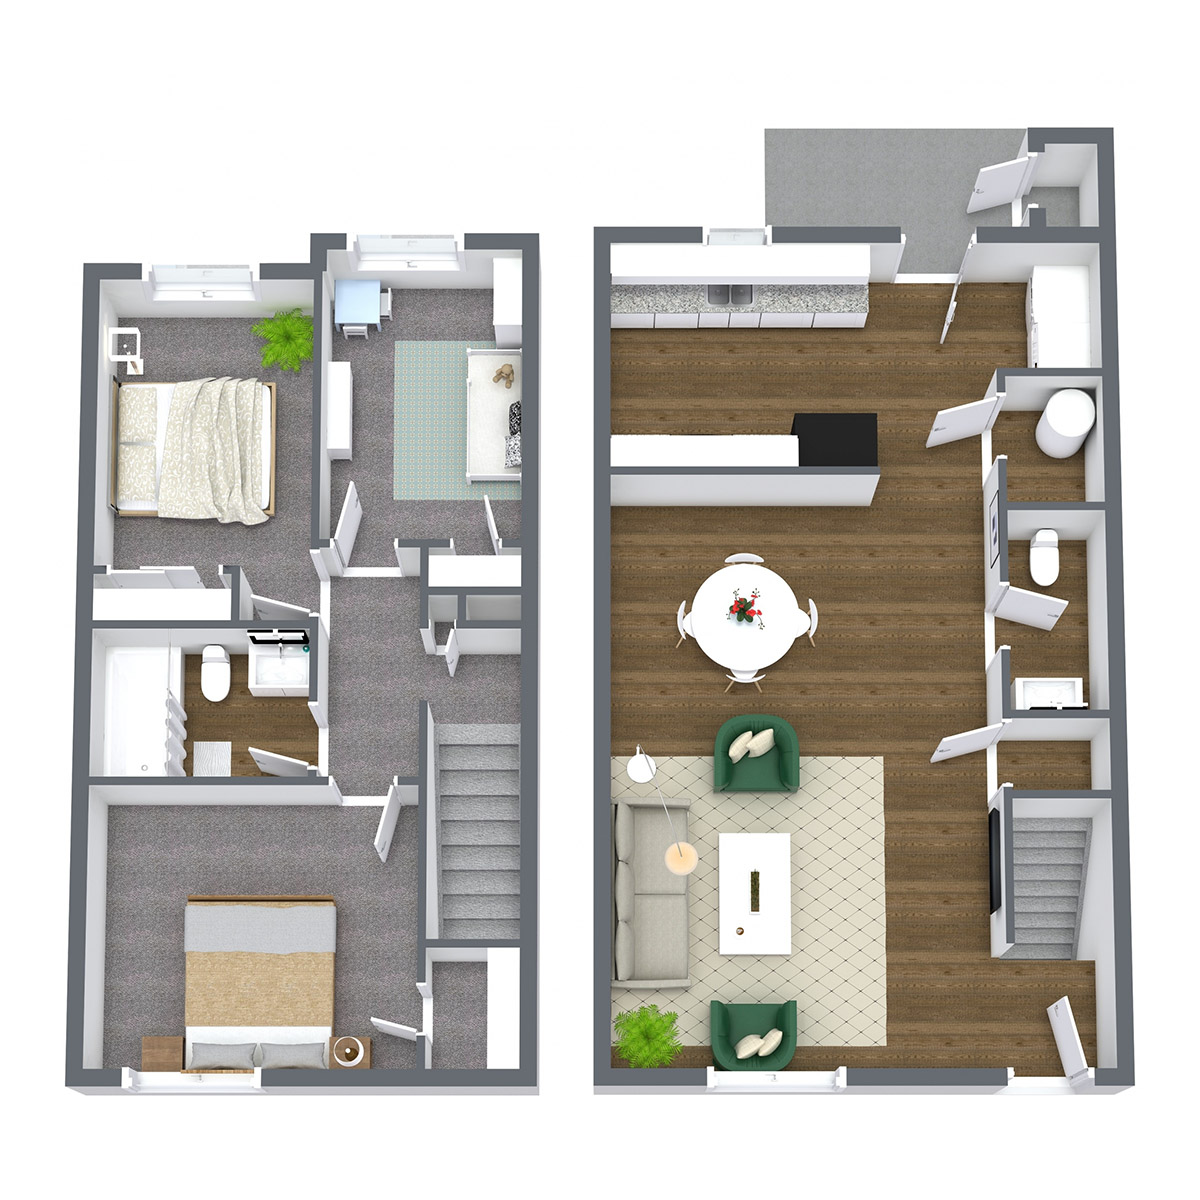 Prairie West - Floorplan - 3 Bedroom Townhome | Upgraded